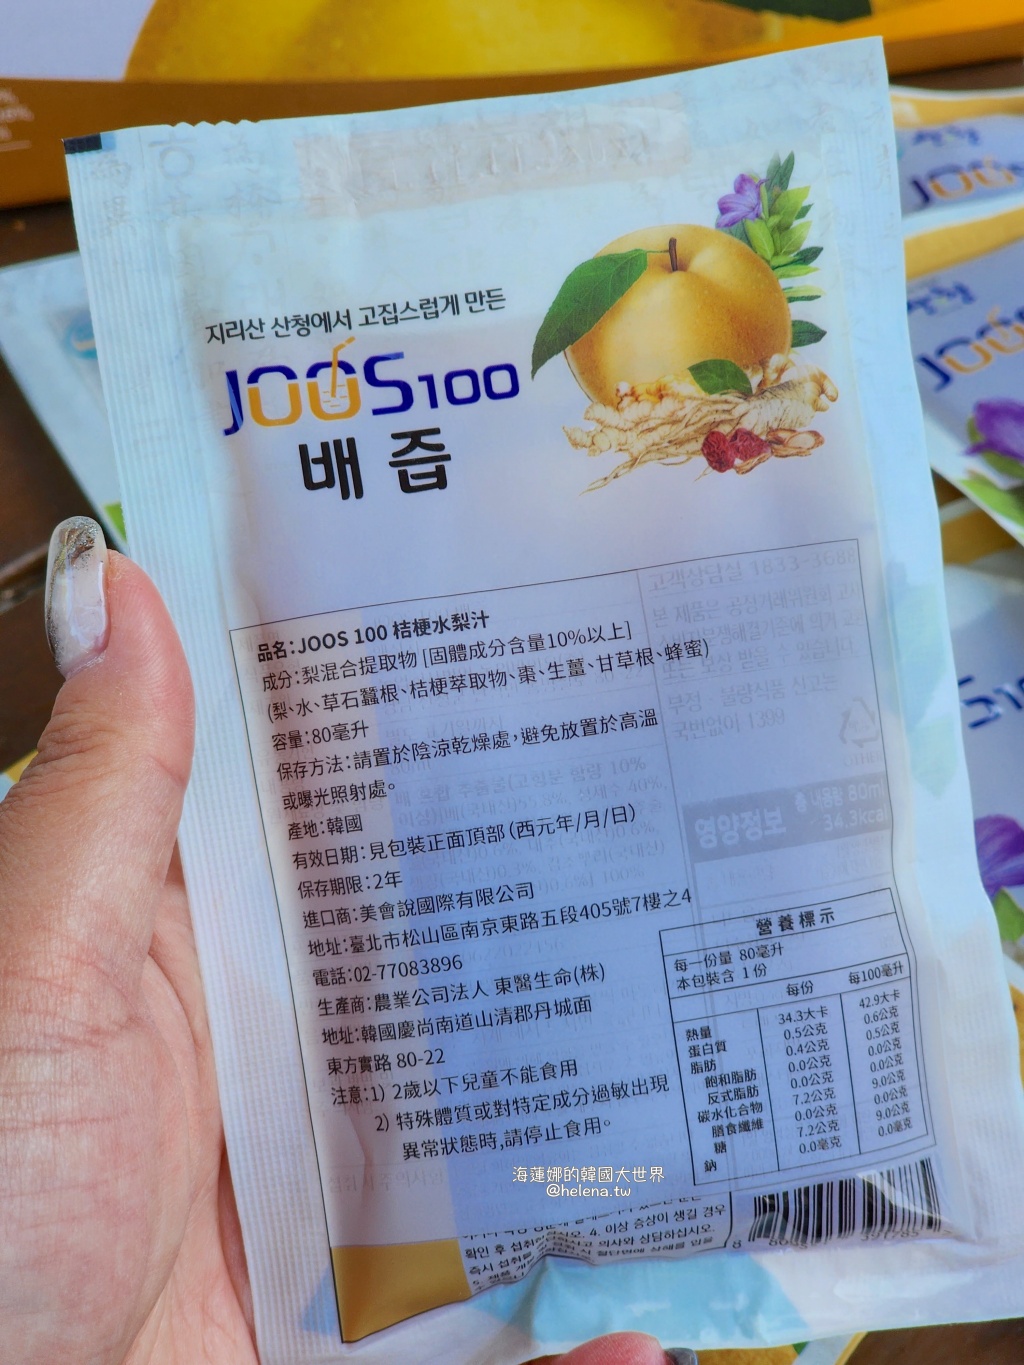 桔梗,水梨汁,生活旅遊好物,韓國,韓國桔梗水梨汁 @Helena's Blog